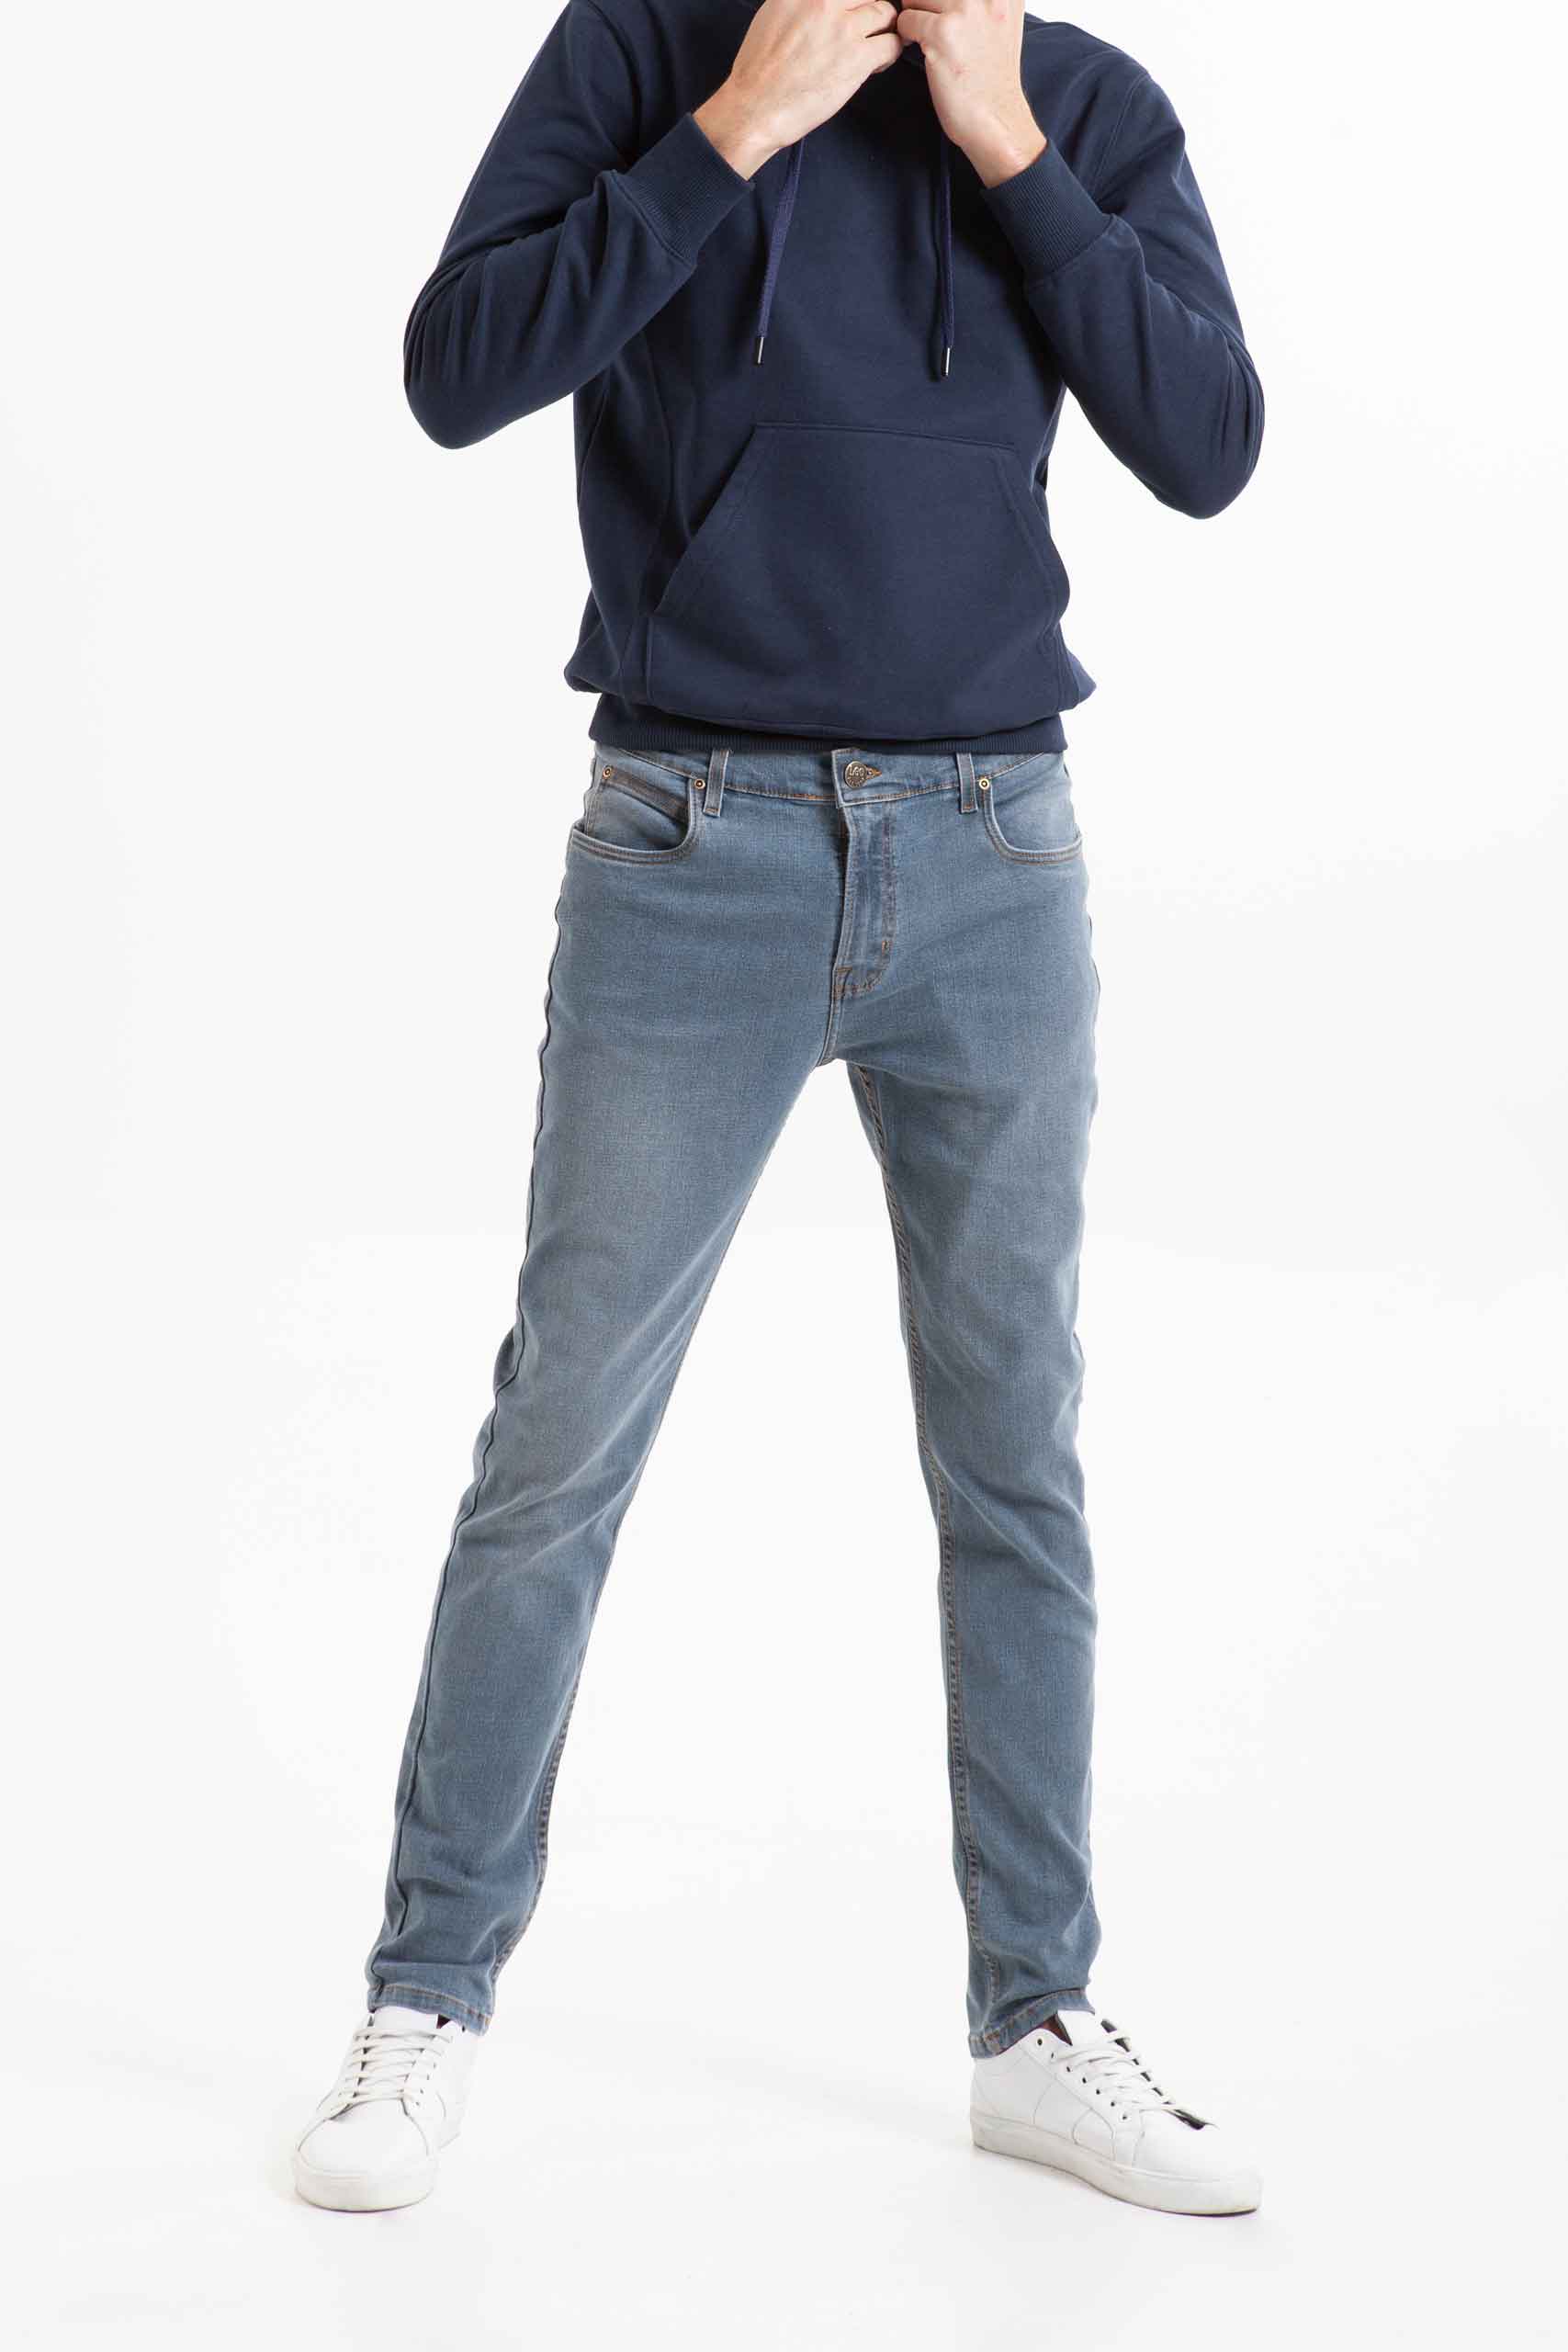 Vista frontal de jean color azul de pierna recta de marca lee